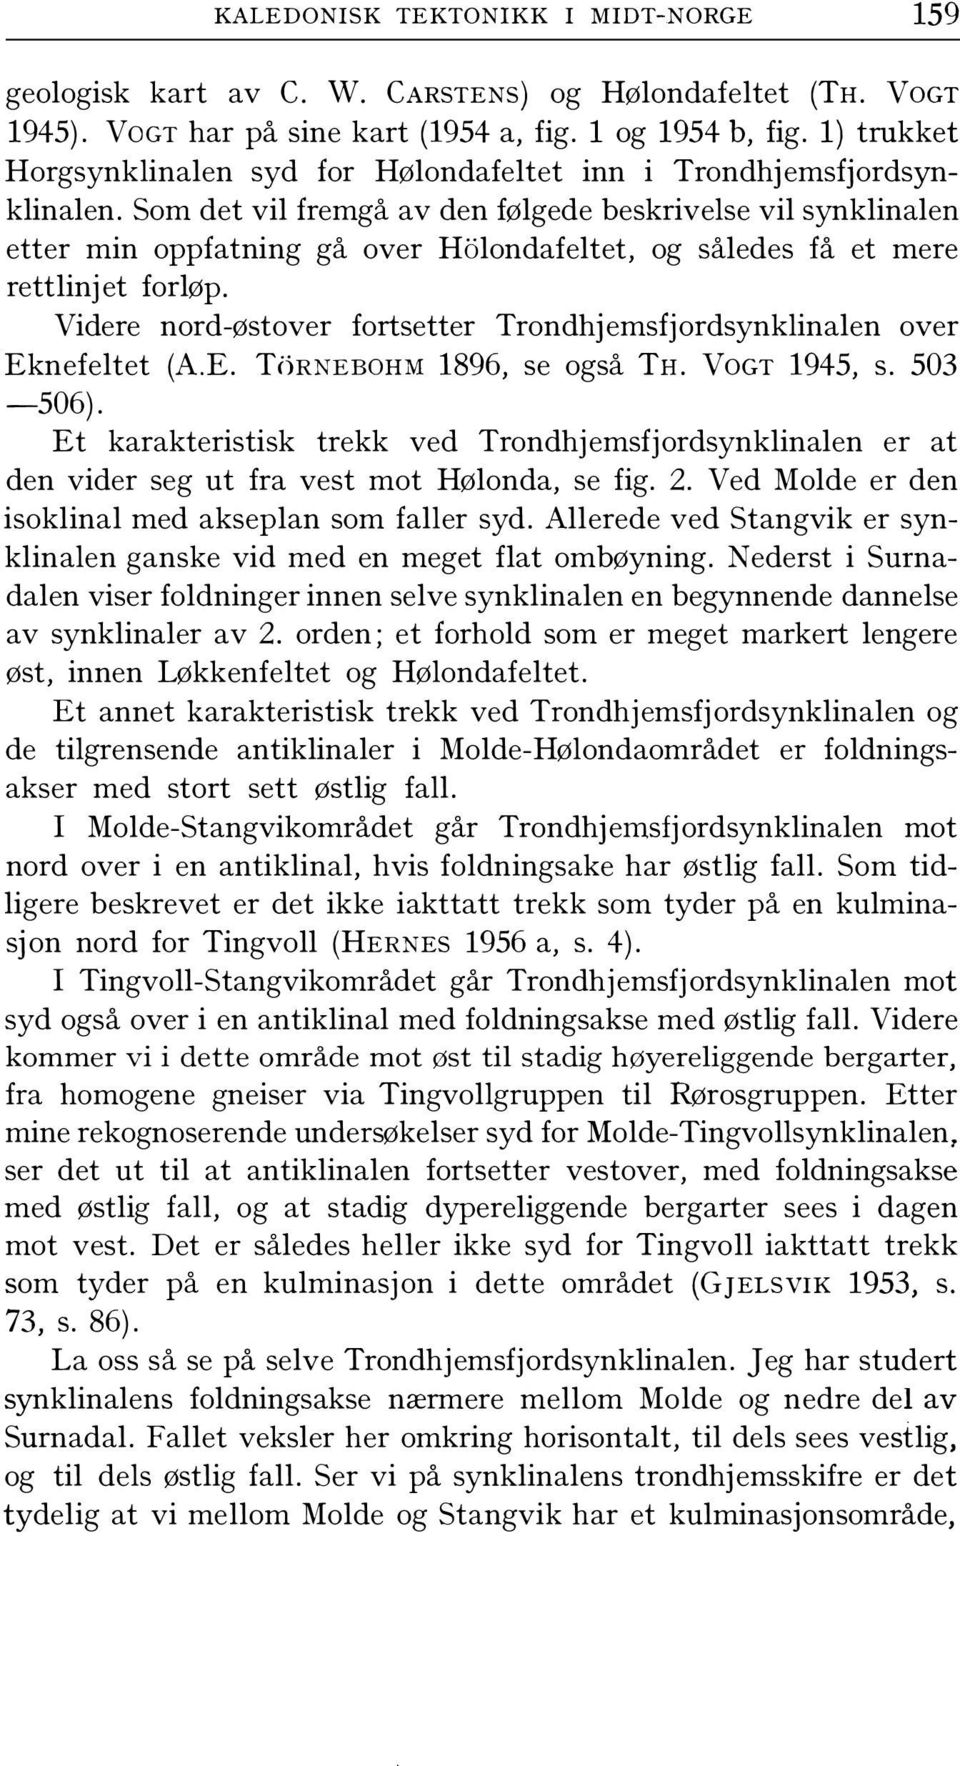 Videre nord-østover fortsetter Trondhjemsfjordsynklinalen over Eknefeltet (AE Ti)R)IEBOHM 1896, se også TH VoGT 1945, s 503-506) Et karakteristisk trekk ved Trondhjemsfjordsynklinalen er at den vider